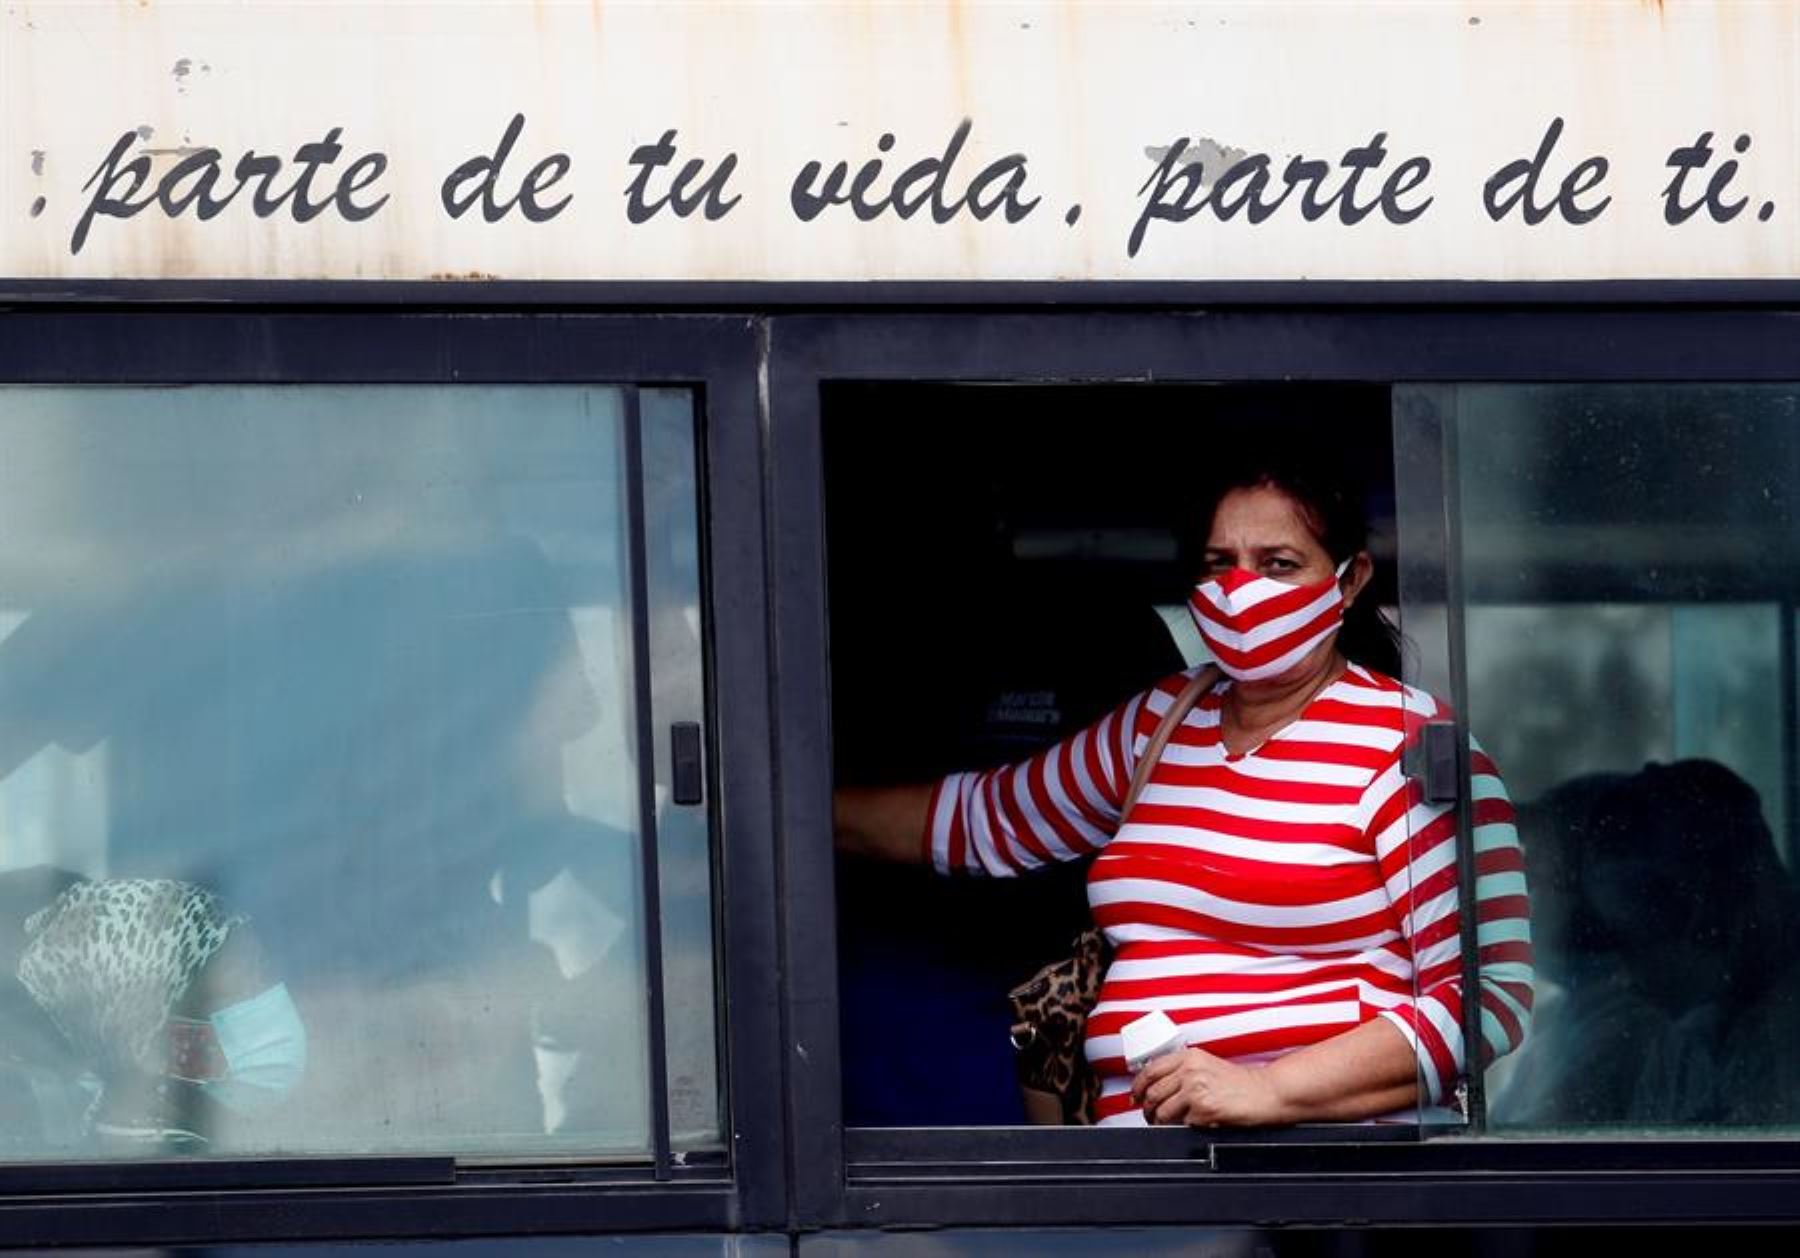 Cuba enfrenta una gran crisis sanitaria a consecuencia de la pandemia.